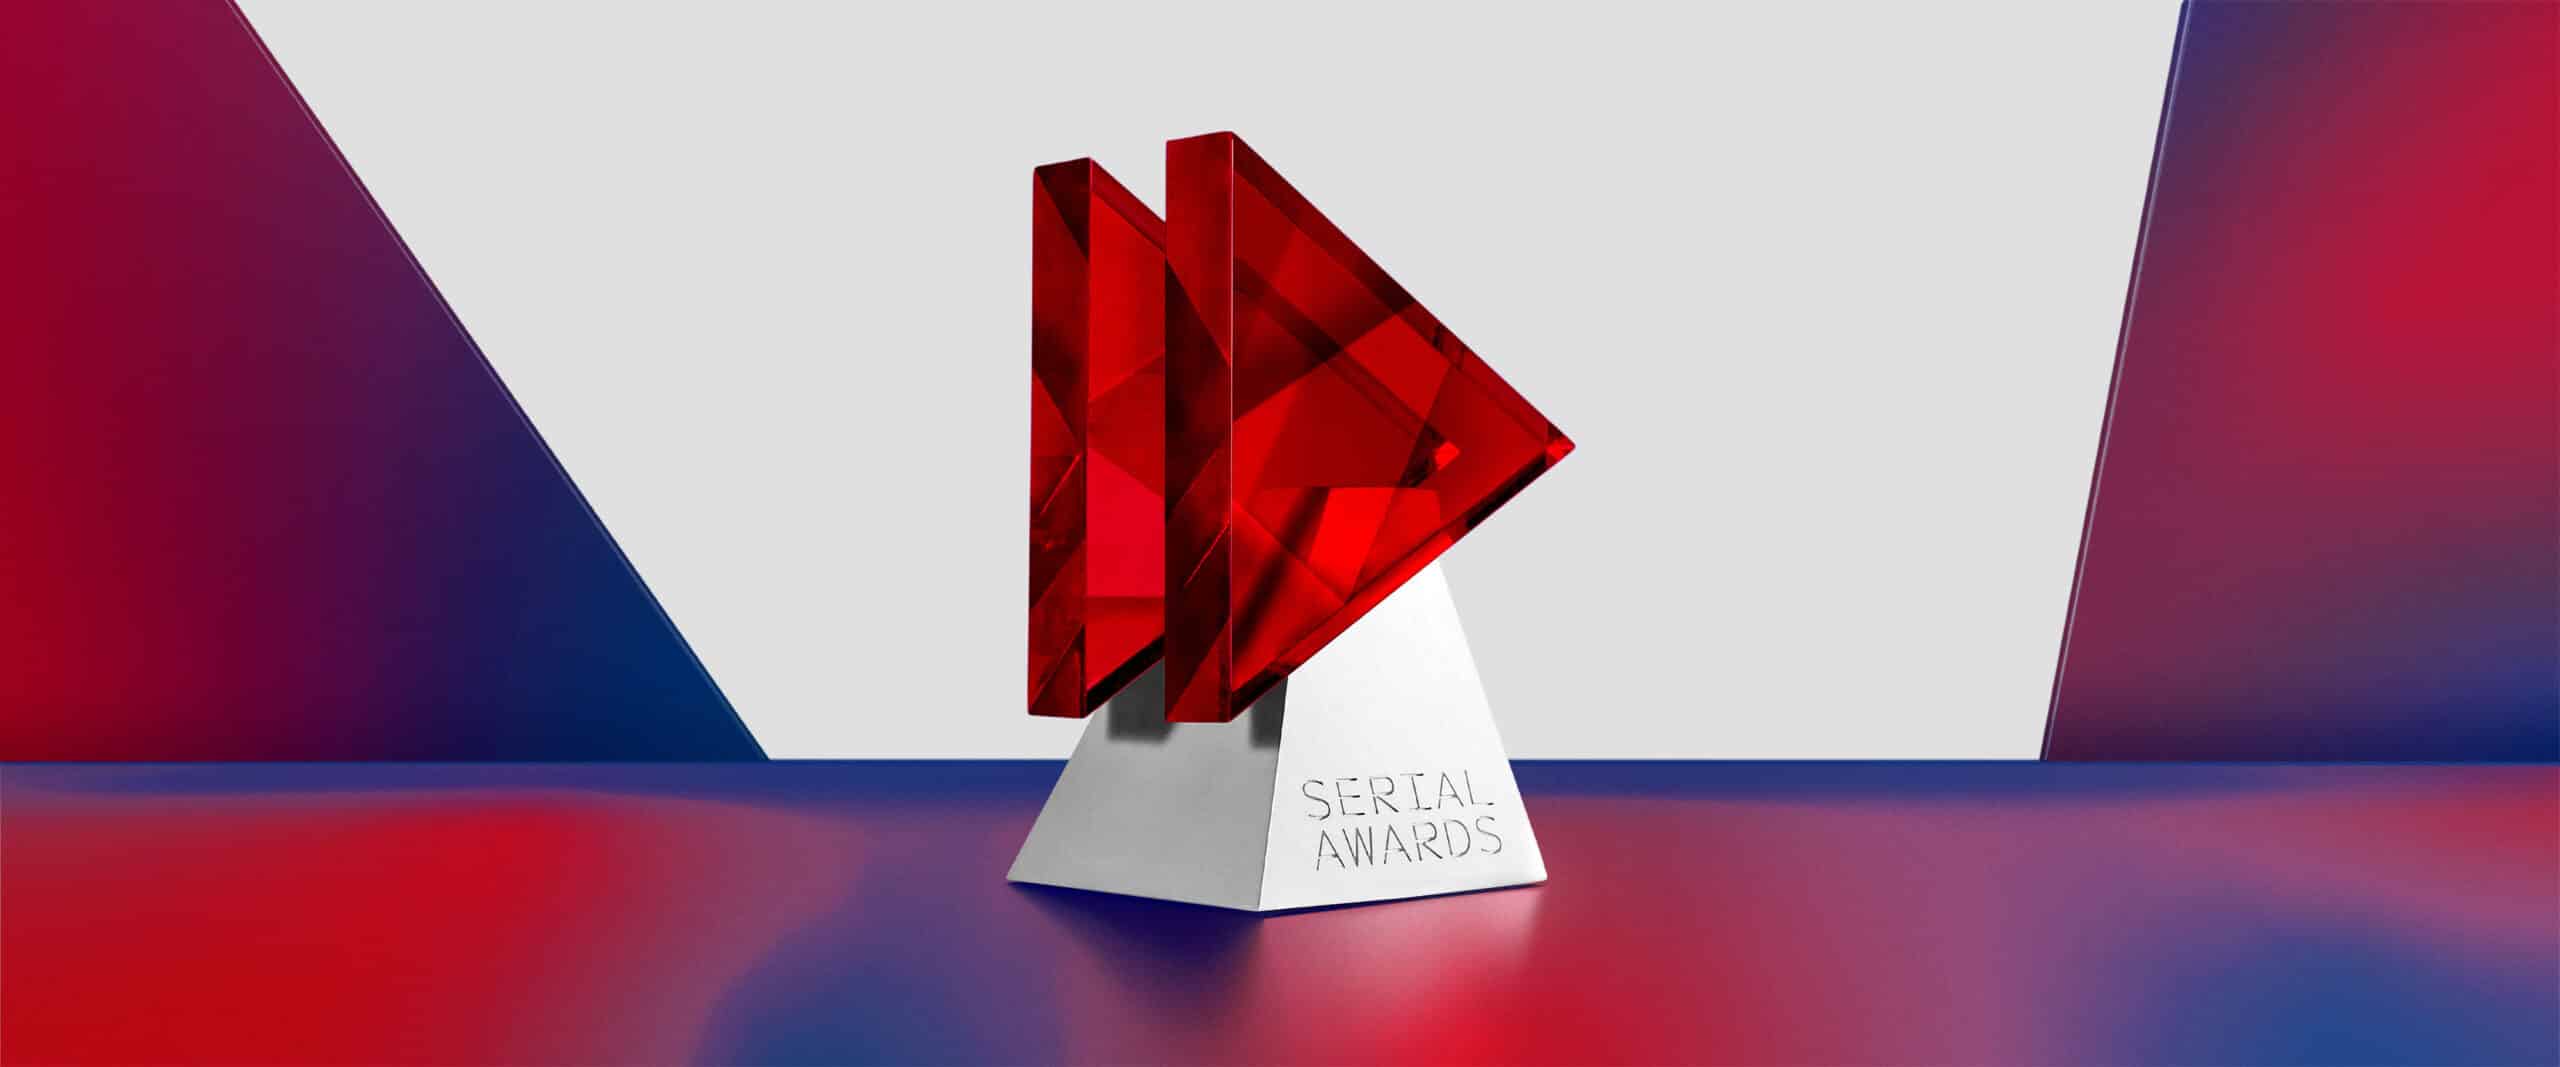 fest serial awards 2022 vincitori